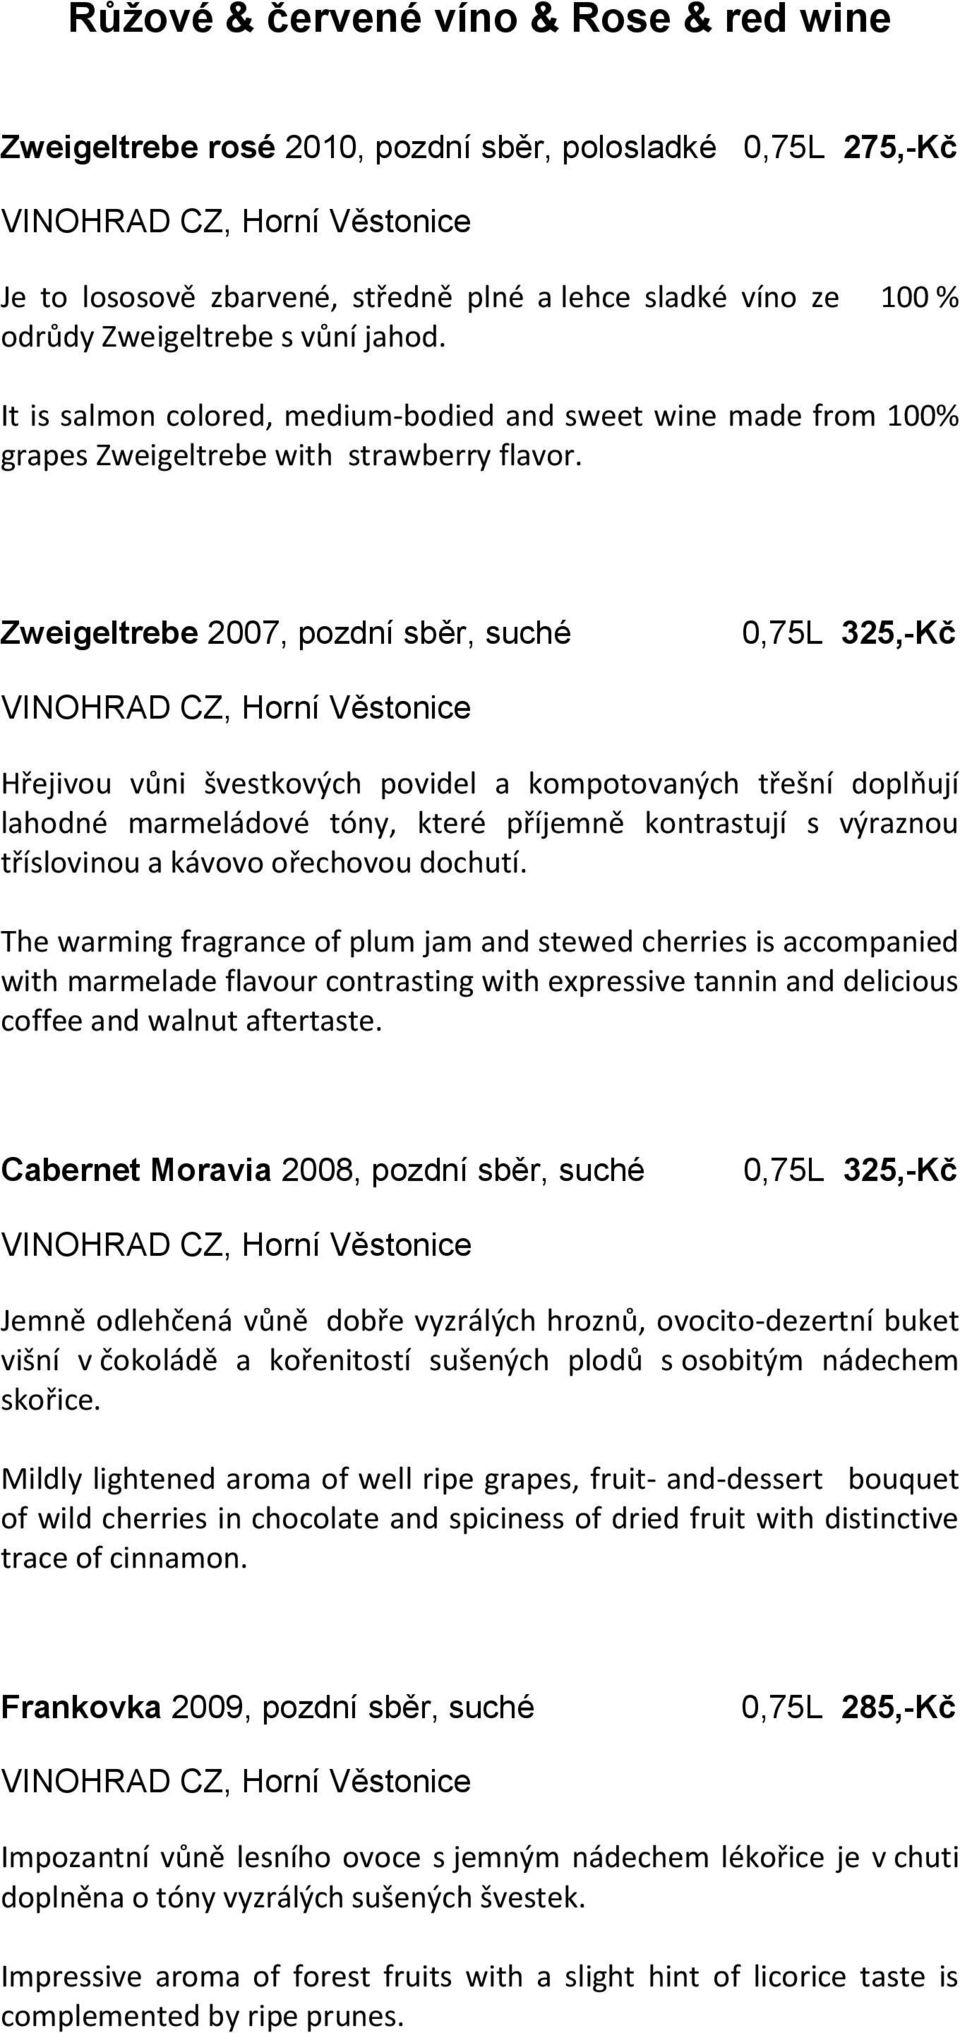 Zweigeltrebe 2007, pozdní sběr, suché 0,75L 325,-Kč Hřejivou vůni švestkových povidel a kompotovaných třešní doplňují lahodné marmeládové tóny, které příjemně kontrastují s výraznou tříslovinou a